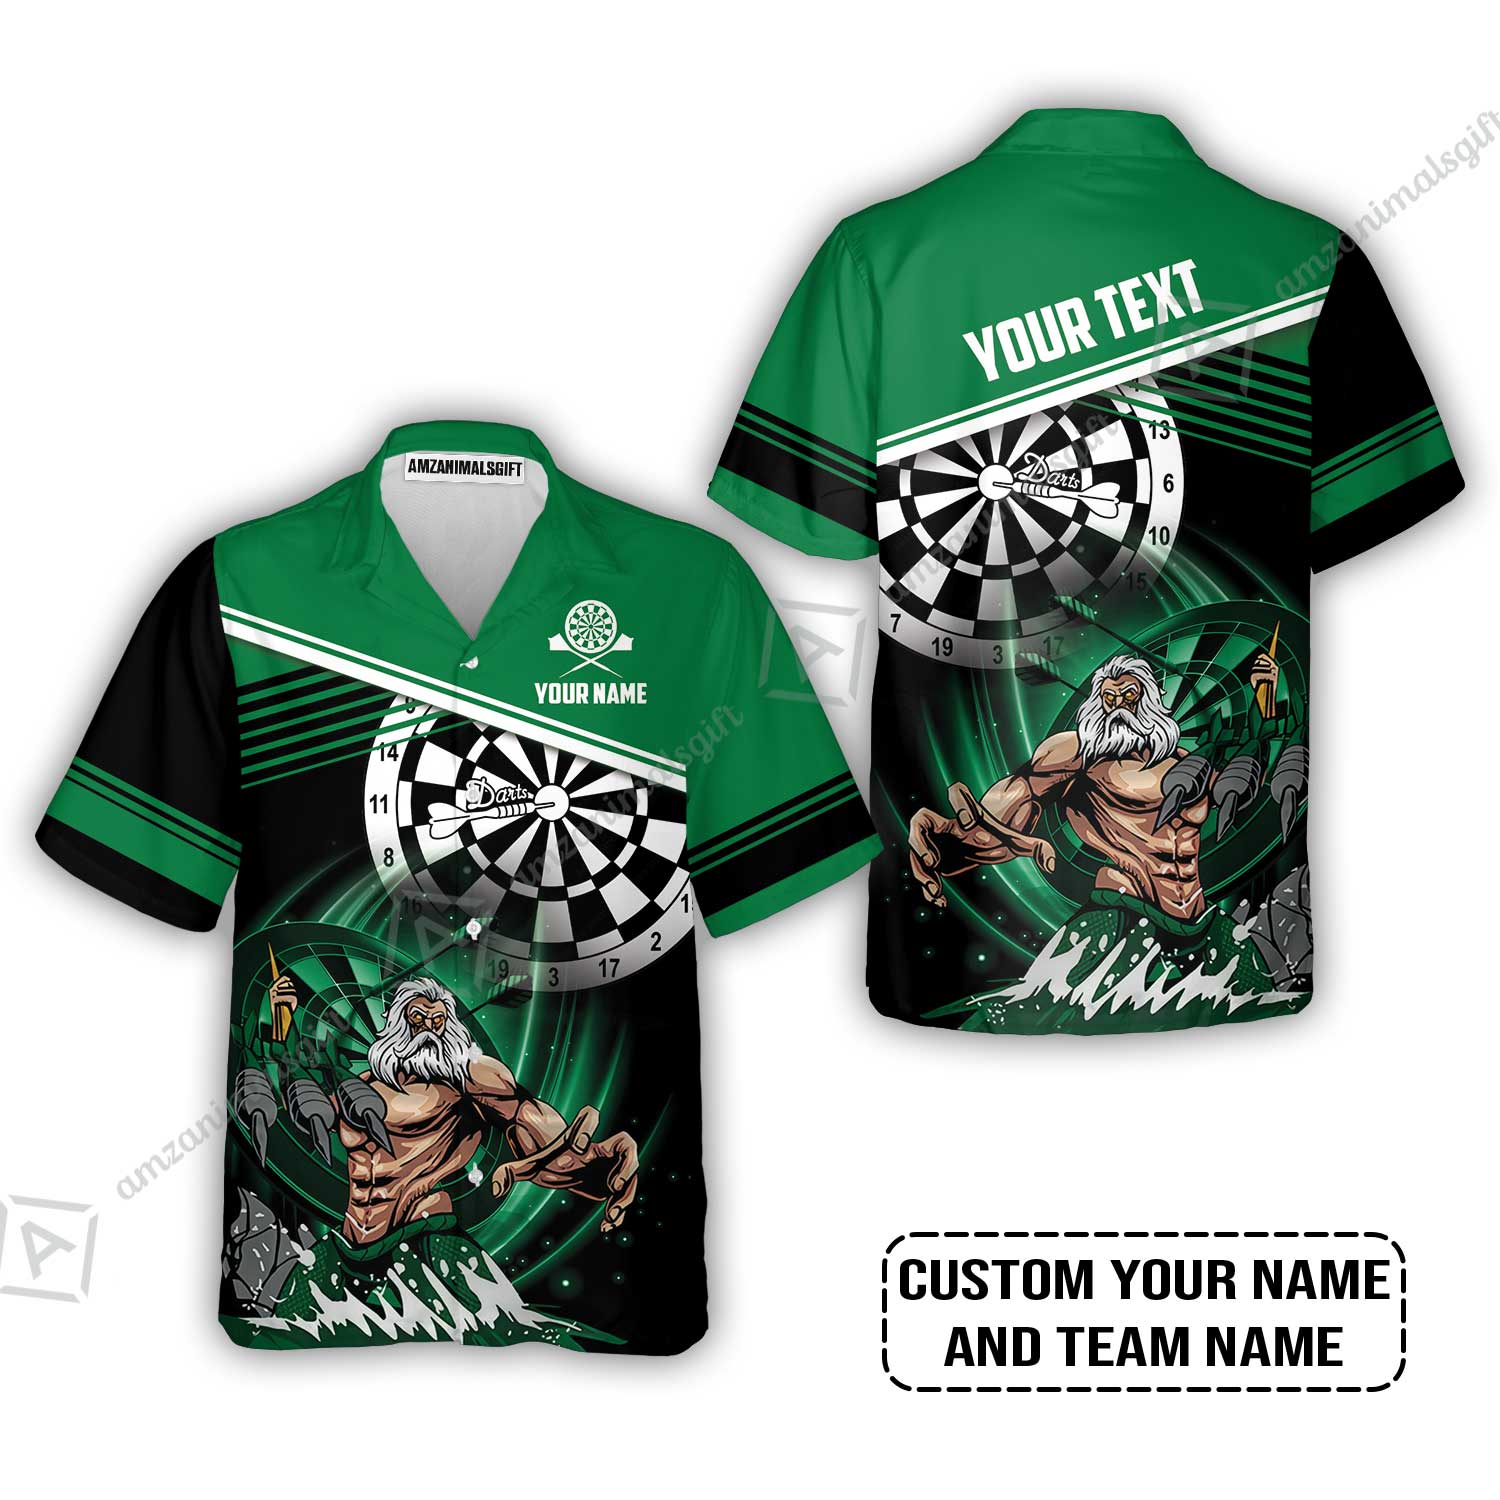 Customized Name & Text Darts Hawaiian Shirt, Personalized Name Poseidon Darts Hawaiian Shirt